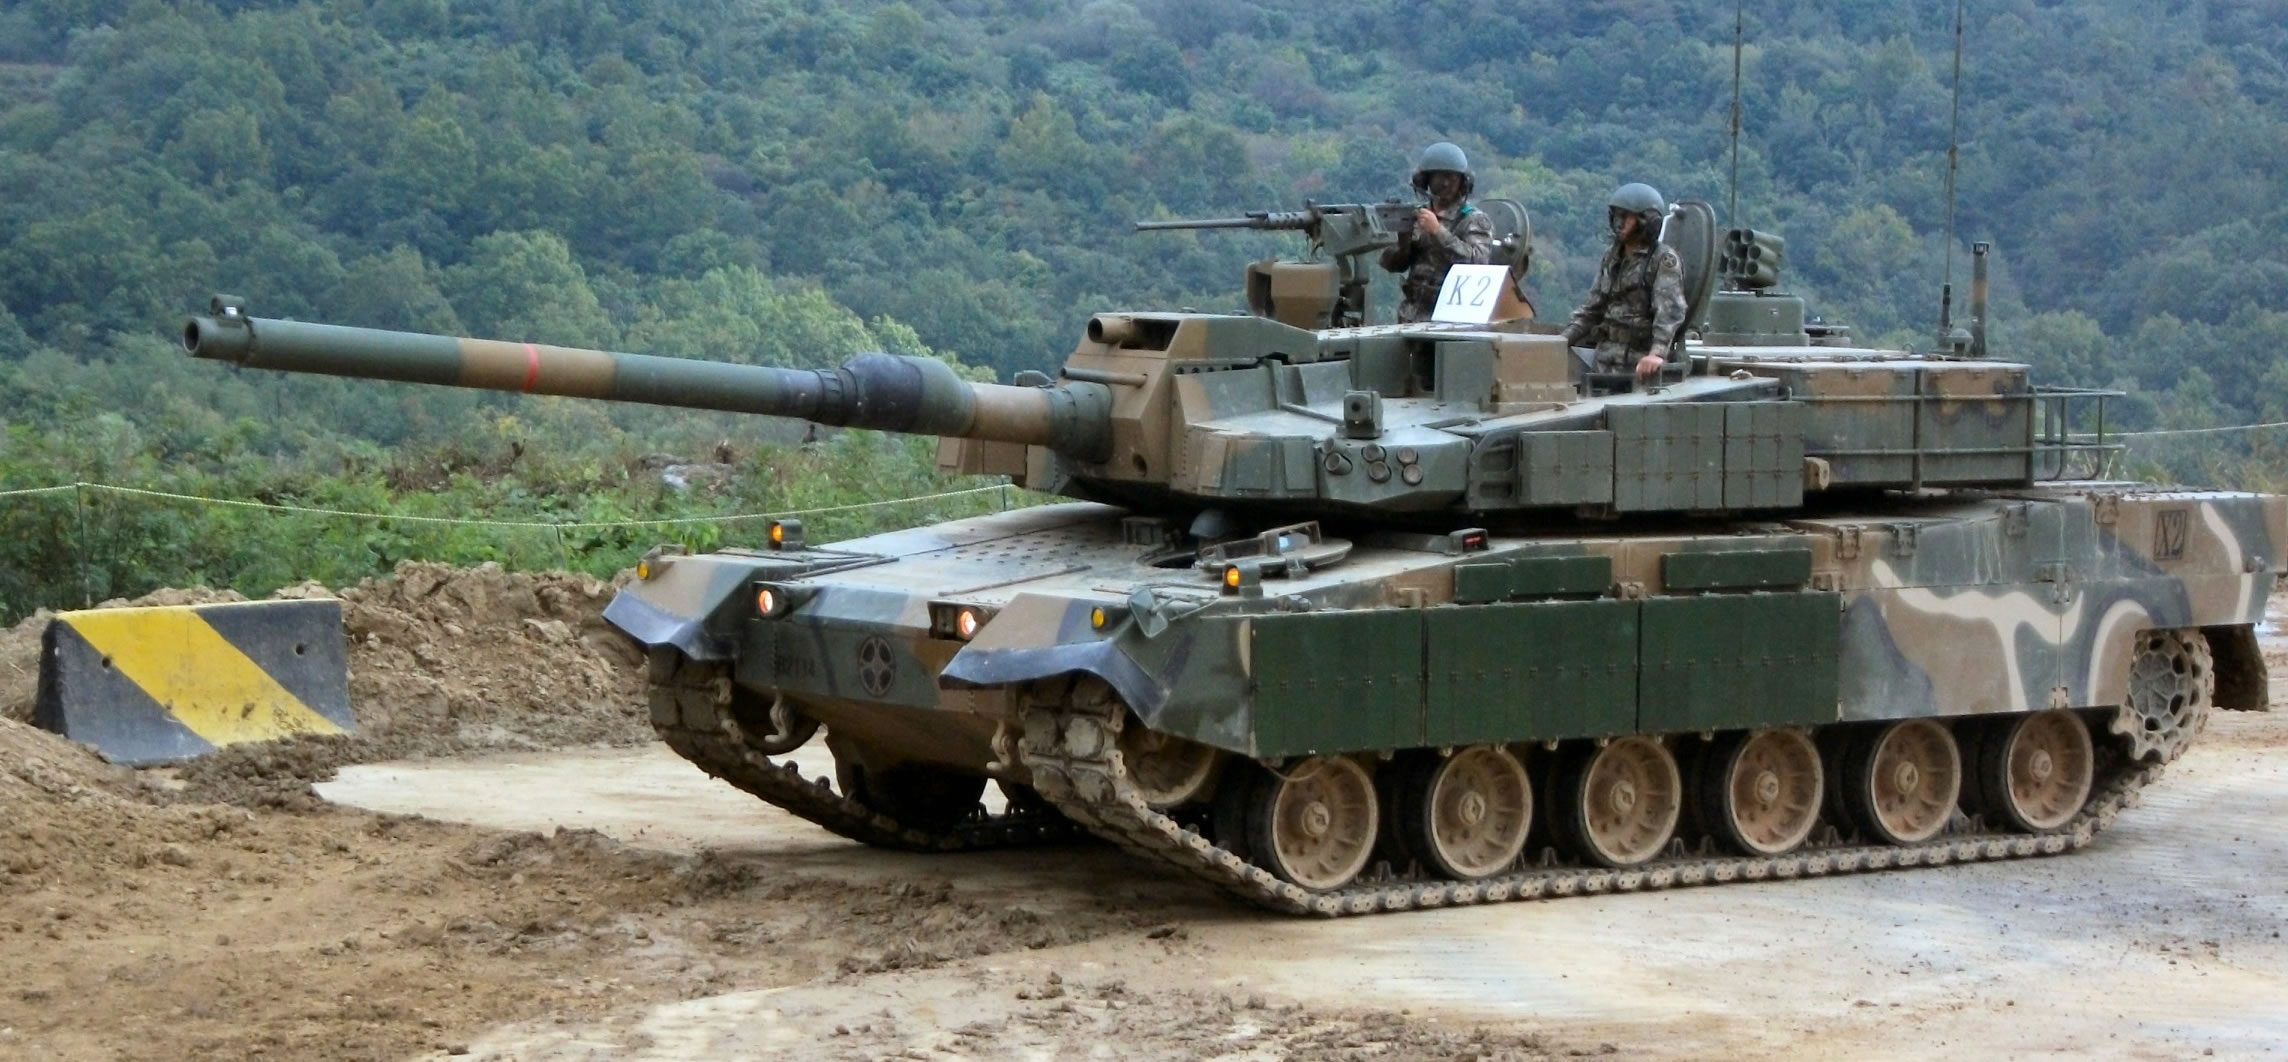 K2 Black Panther Tank